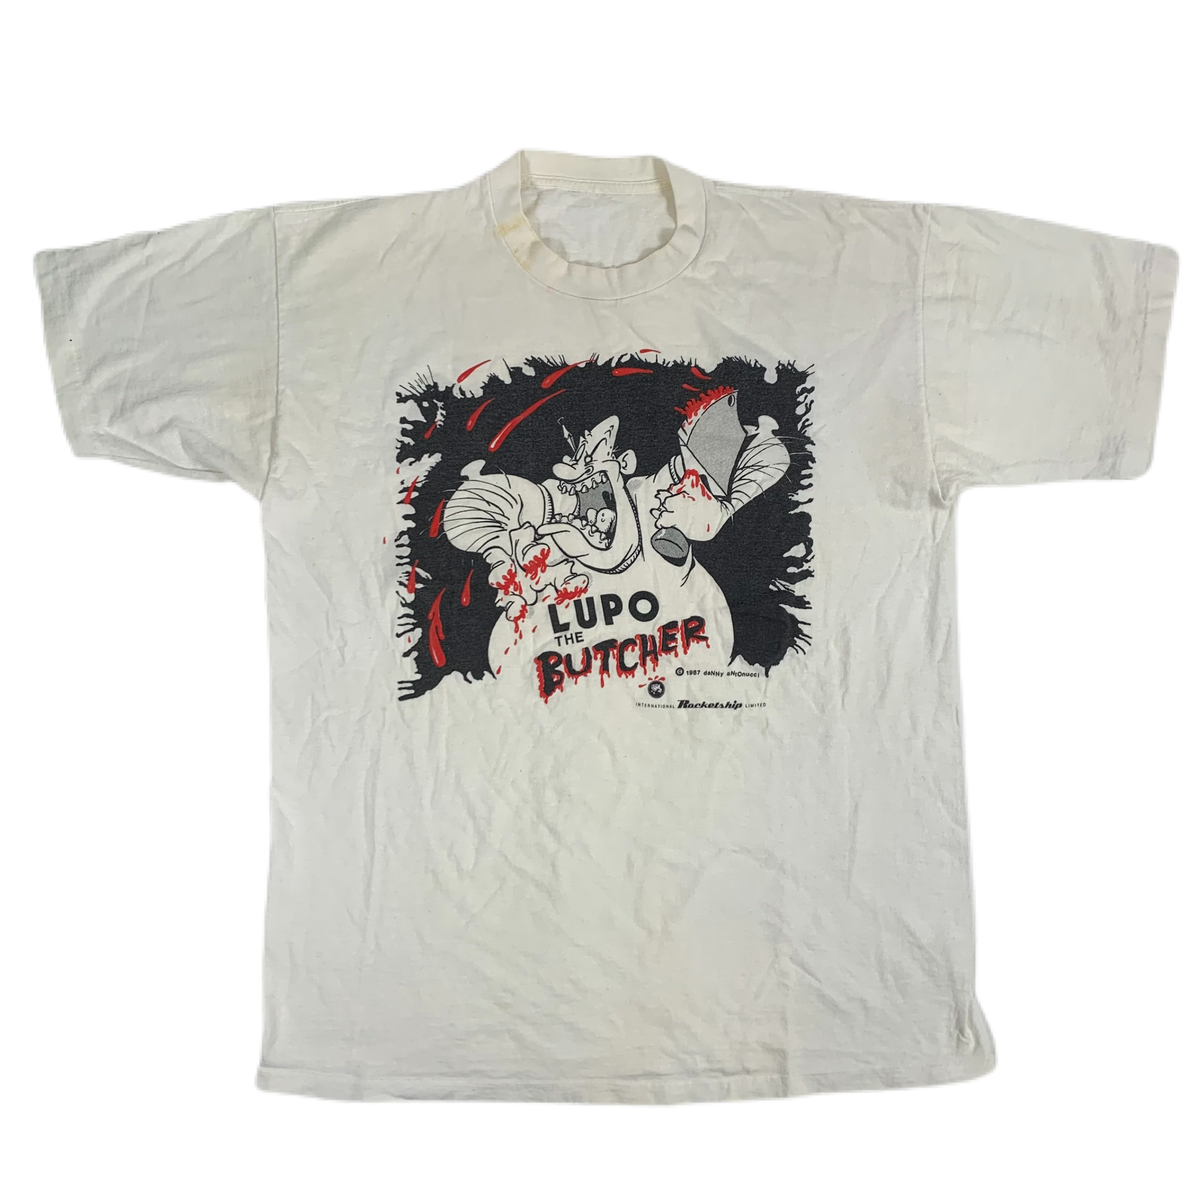 Vintage Lupo the Butcher &quot;Danny Antonucci&quot; T-Shirt